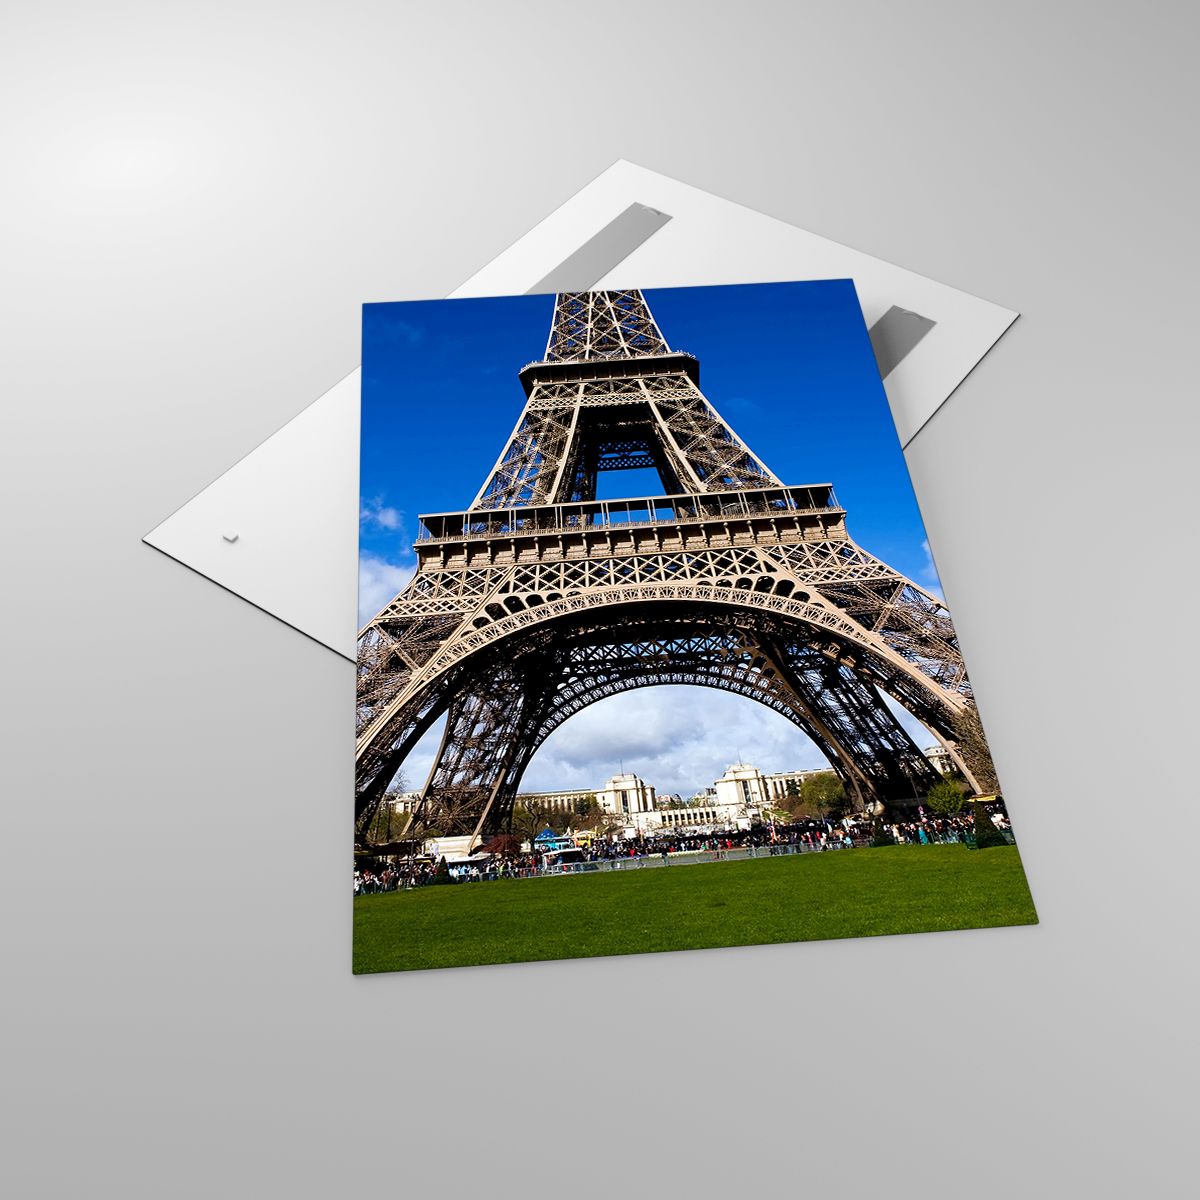 Quadri Torre Eiffel, Quadri Parigi, Quadri Architettura, Quadri Francia, Quadri Città